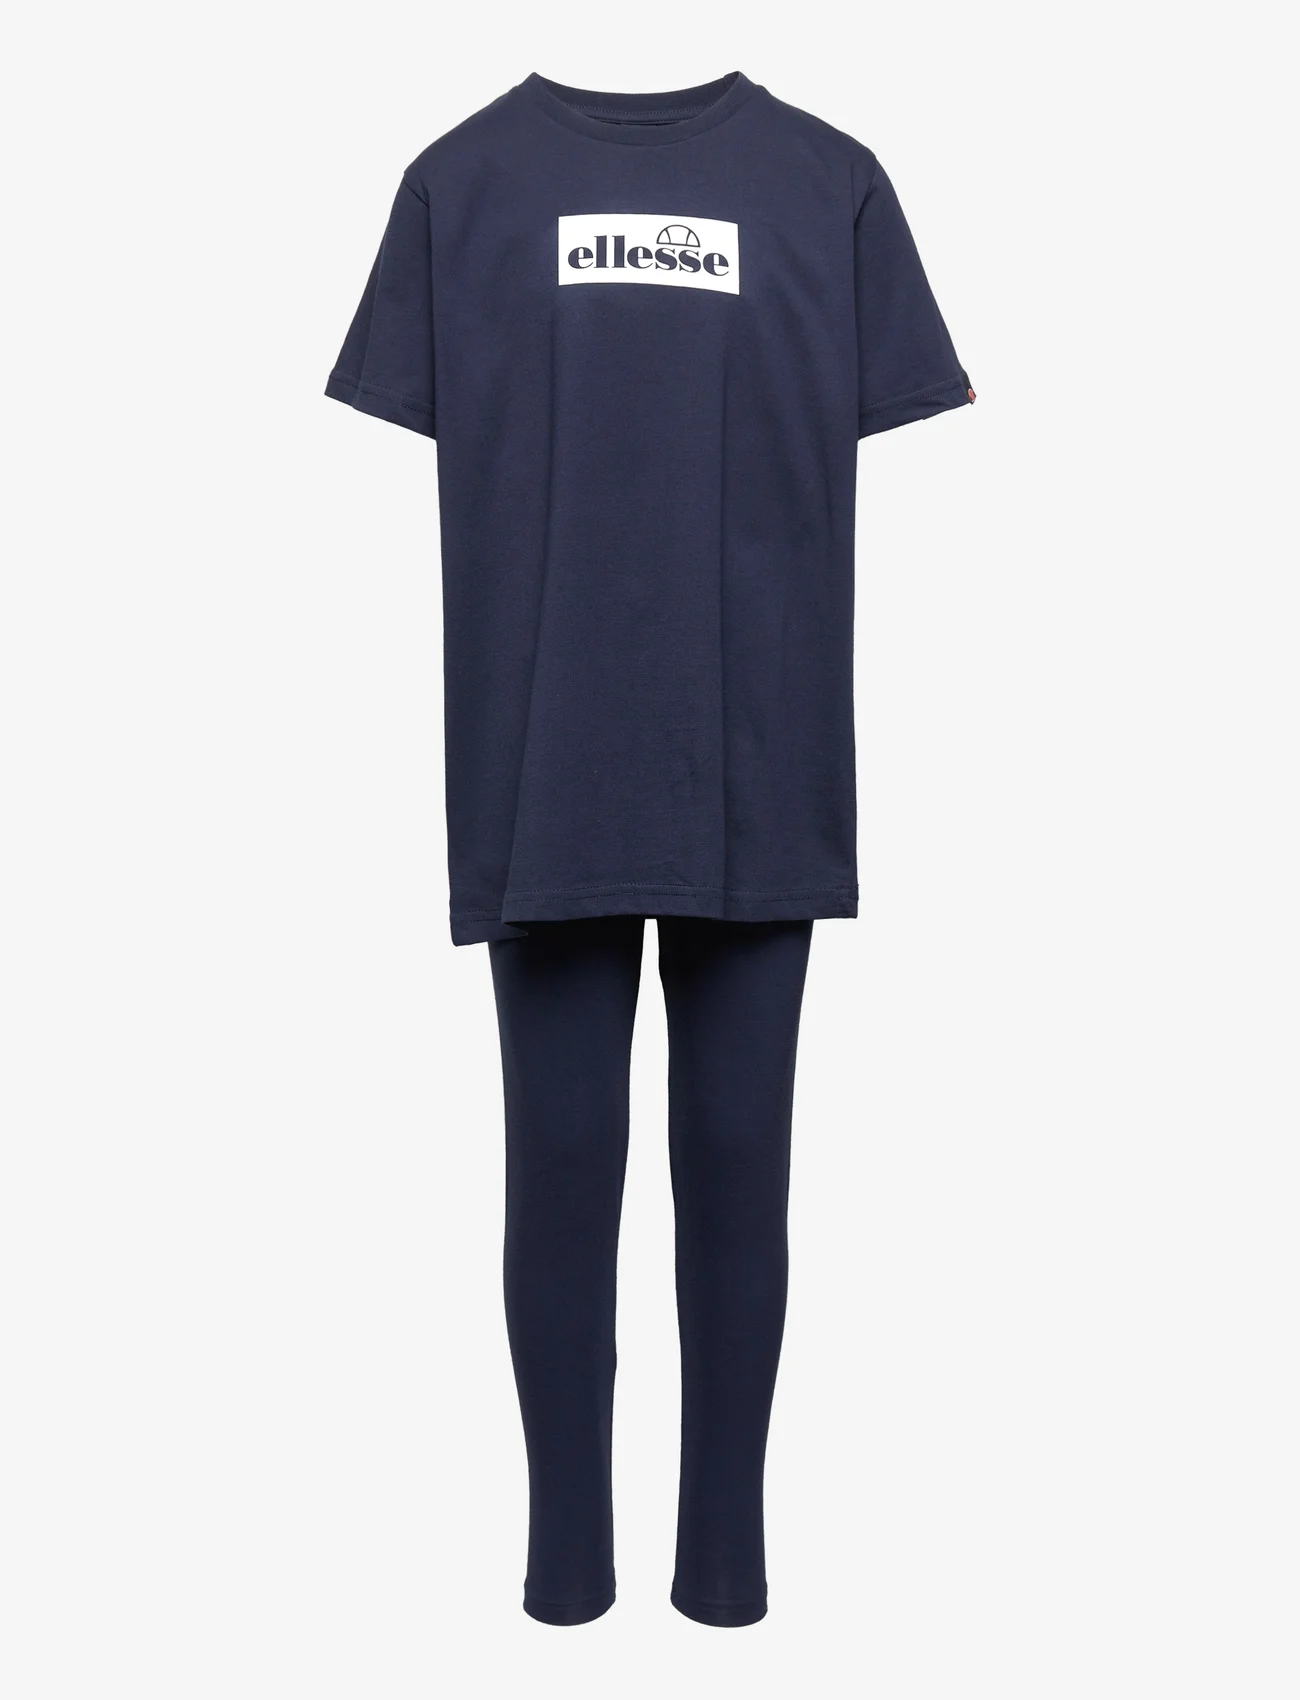 Ellesse - EL REALTA JNR LEGGING SET - sets with short-sleeved t-shirt - navy - 0